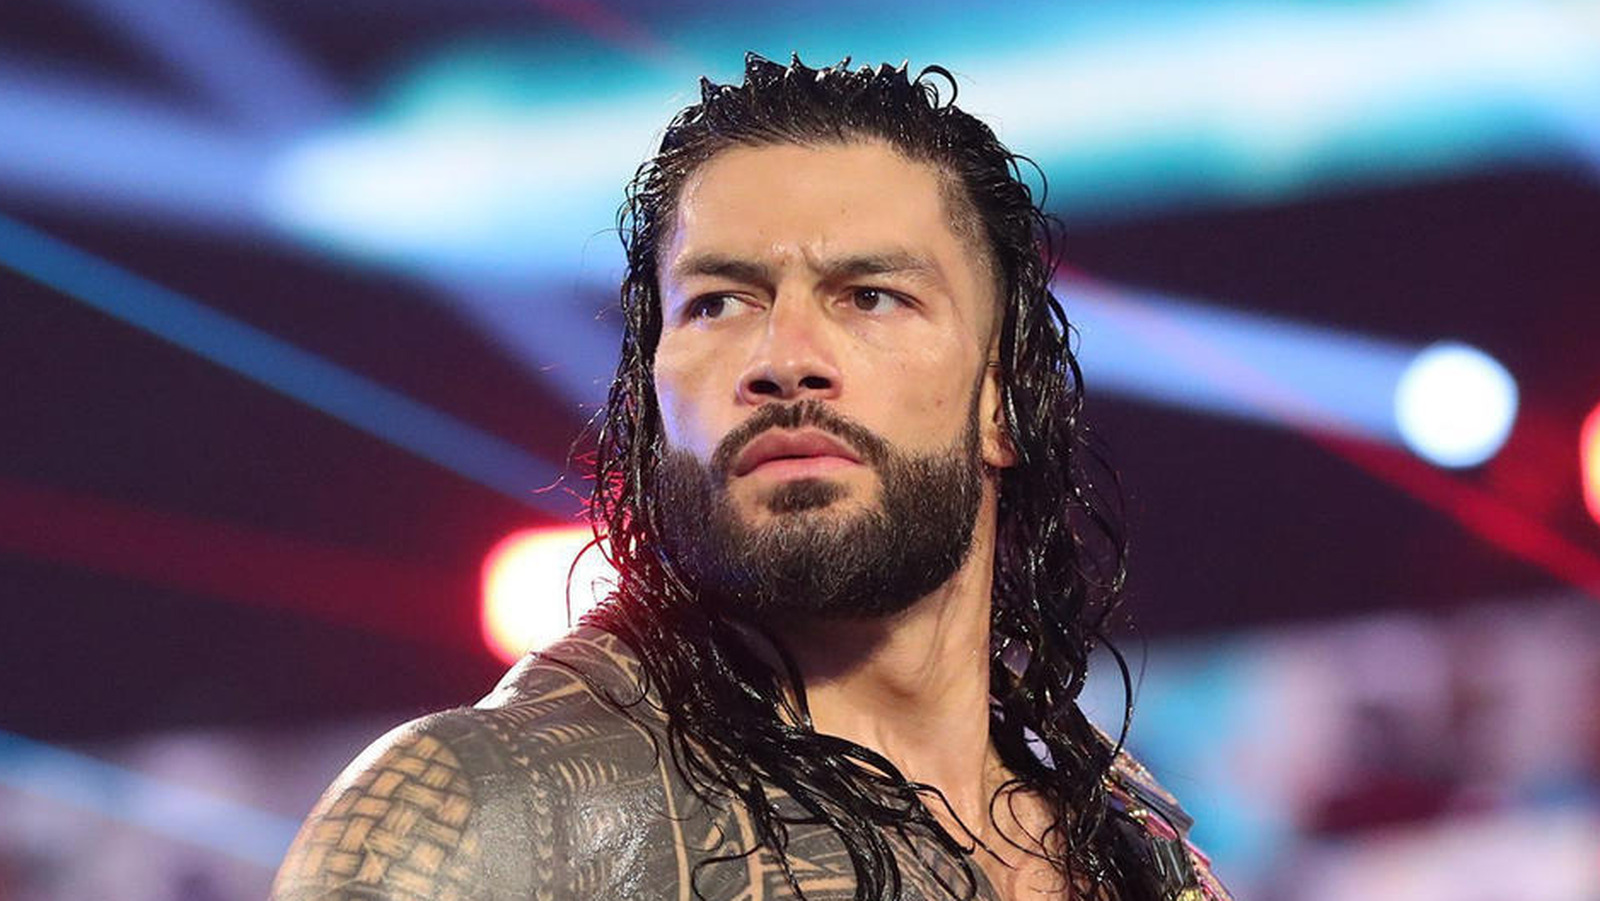 Se informa que la mejor estrella es considerada para el oponente del WWE Royal Rumble de Roman Reigns